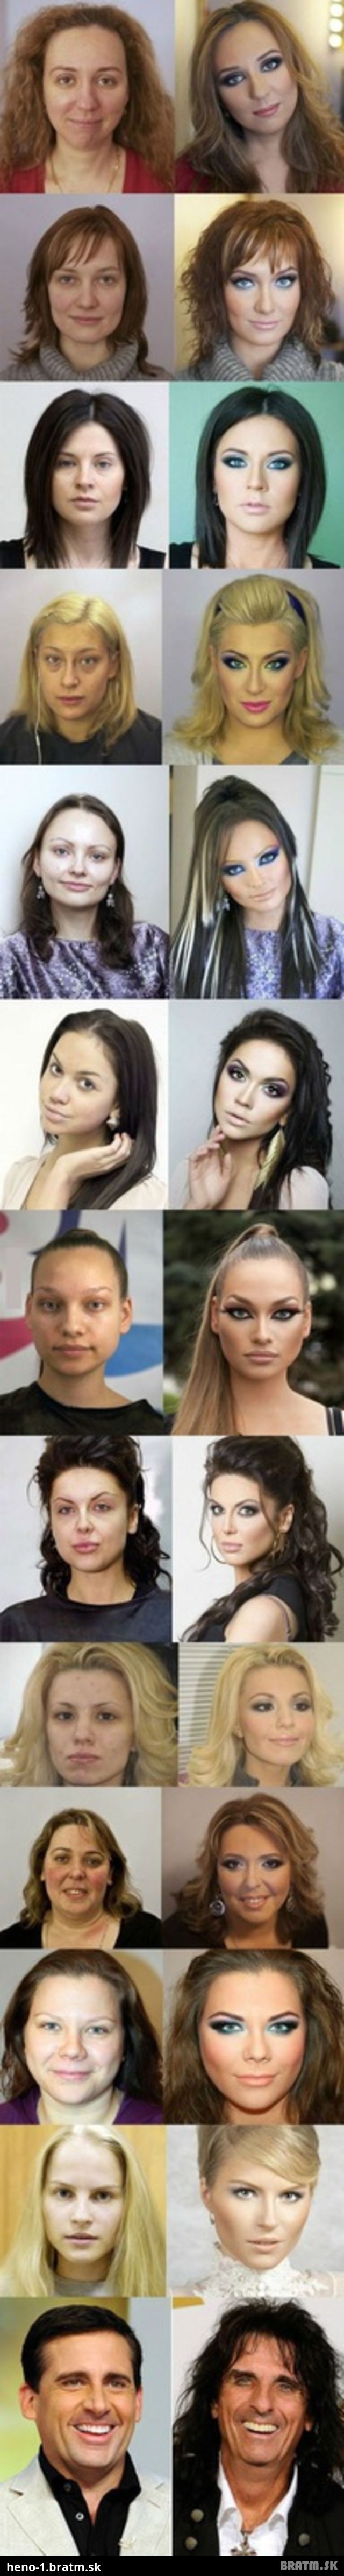 ŠOKUJÚCE, čo dokáže kvalitný make up a photoshop :D